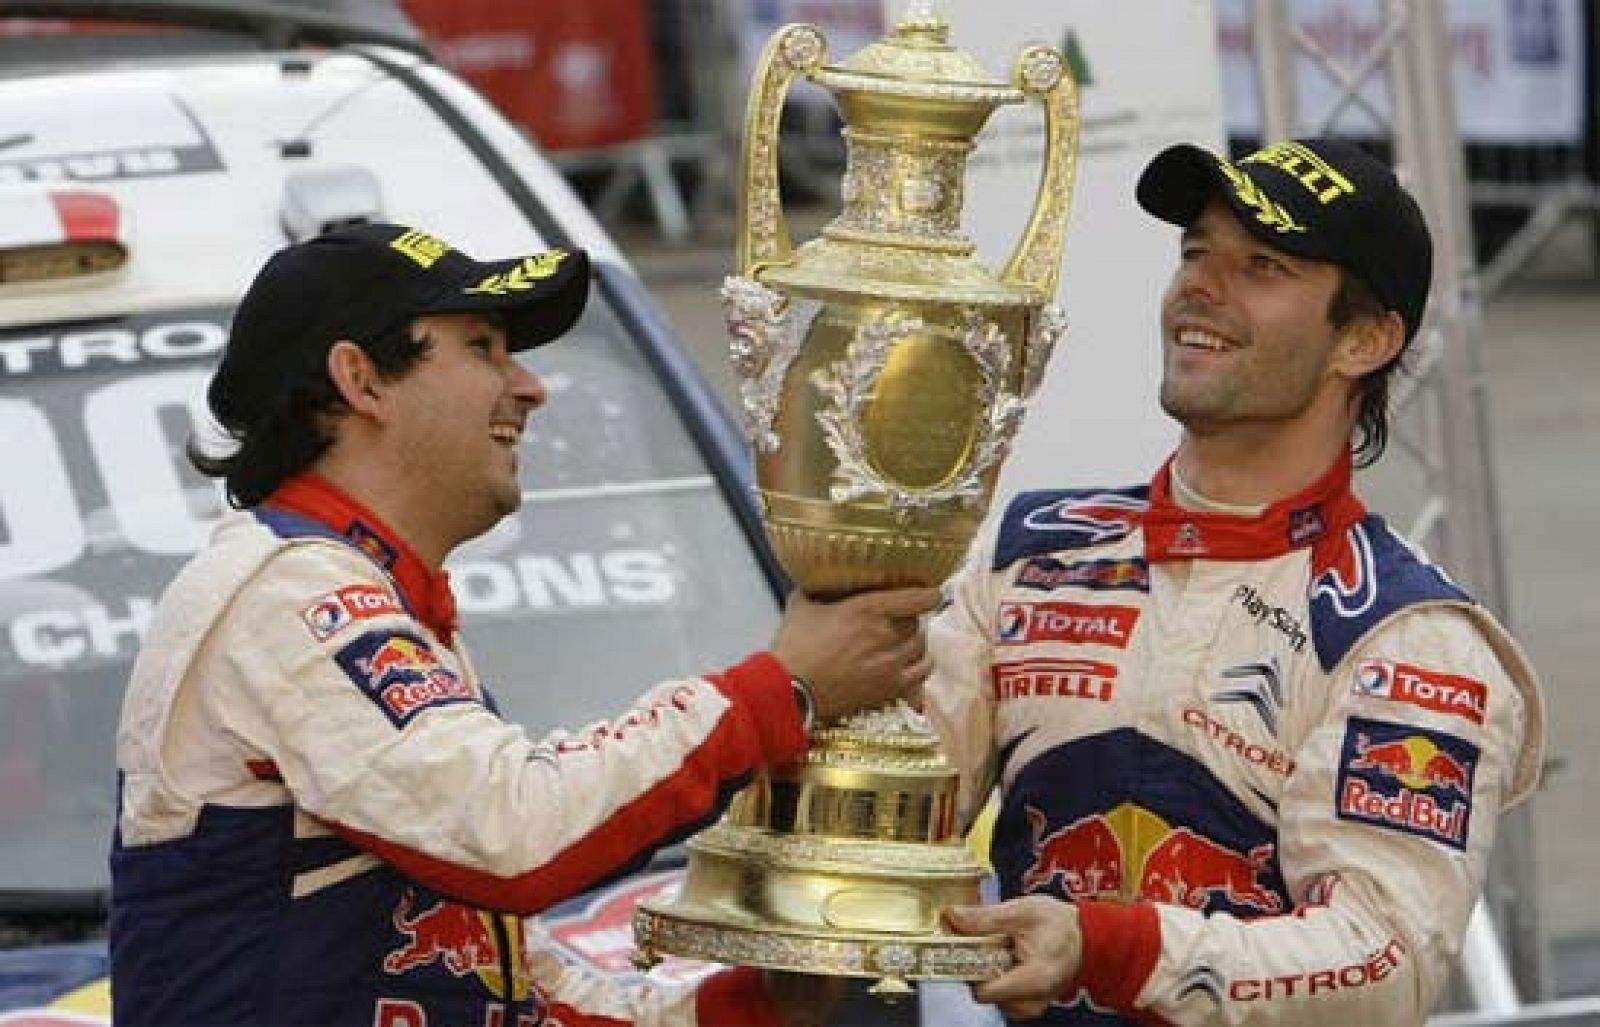 El francés Sebatien Loeb (Citroën) sigue prolongado su leyenda como mejor piloto de rallys de la historia tras conquistar su sexto Mundial consecutivo, 